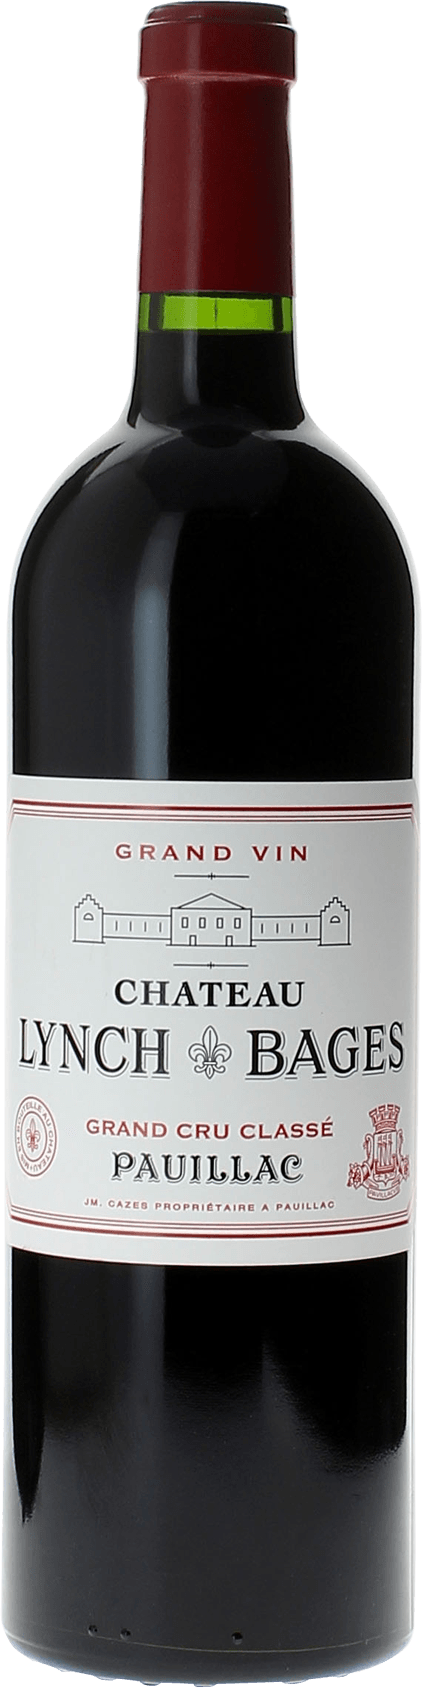 Lynch bages 2007 5 me Grand cru class Pauillac, Bordeaux rouge